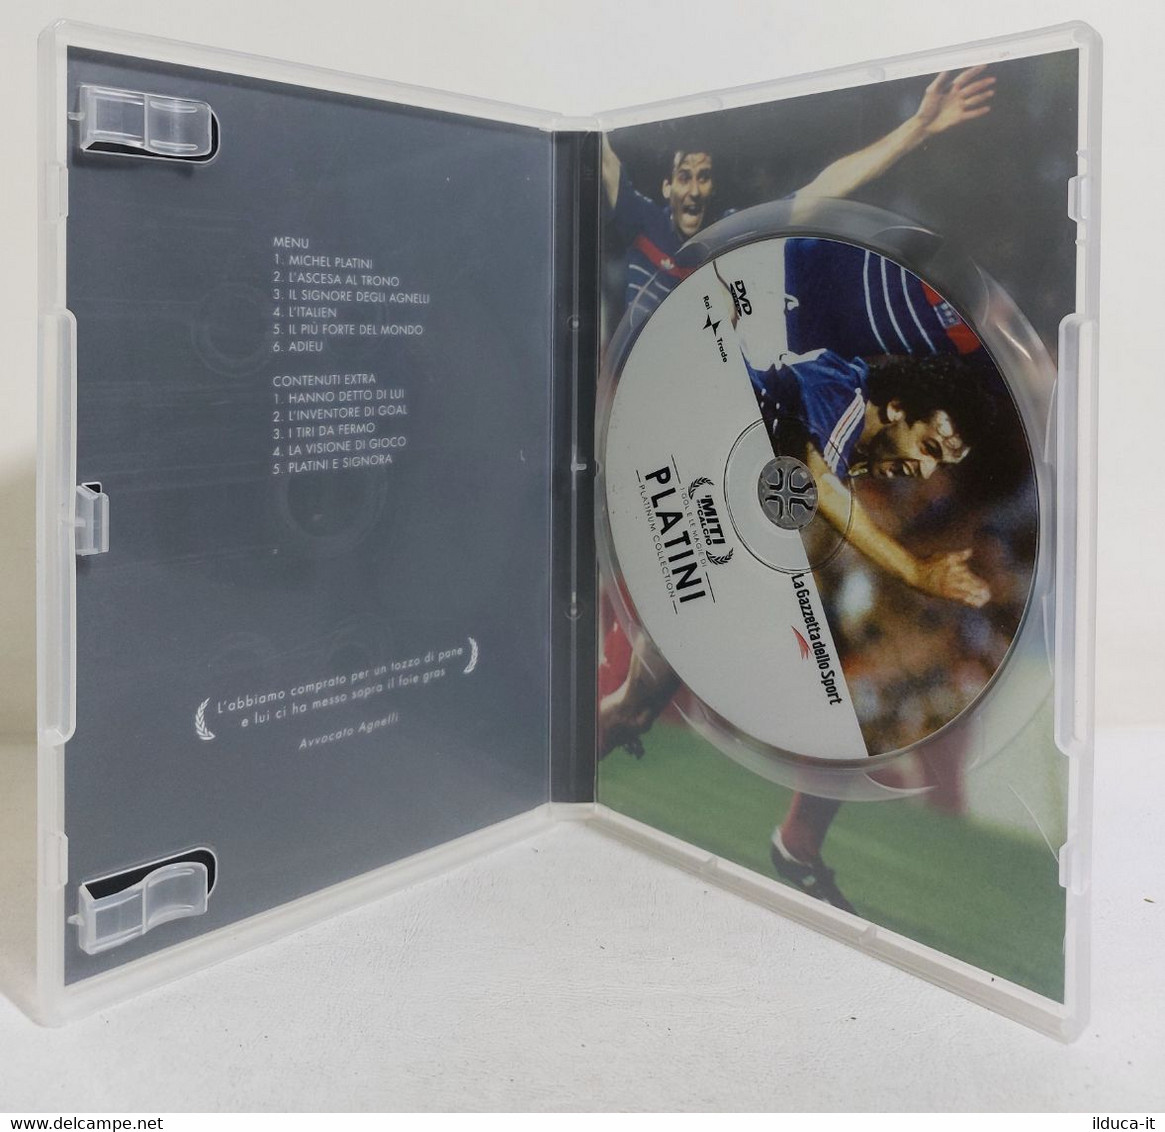 I108632 DVD - I Miti Del Calcio: Platinum Collection - N. 4 - Platini - Deporte